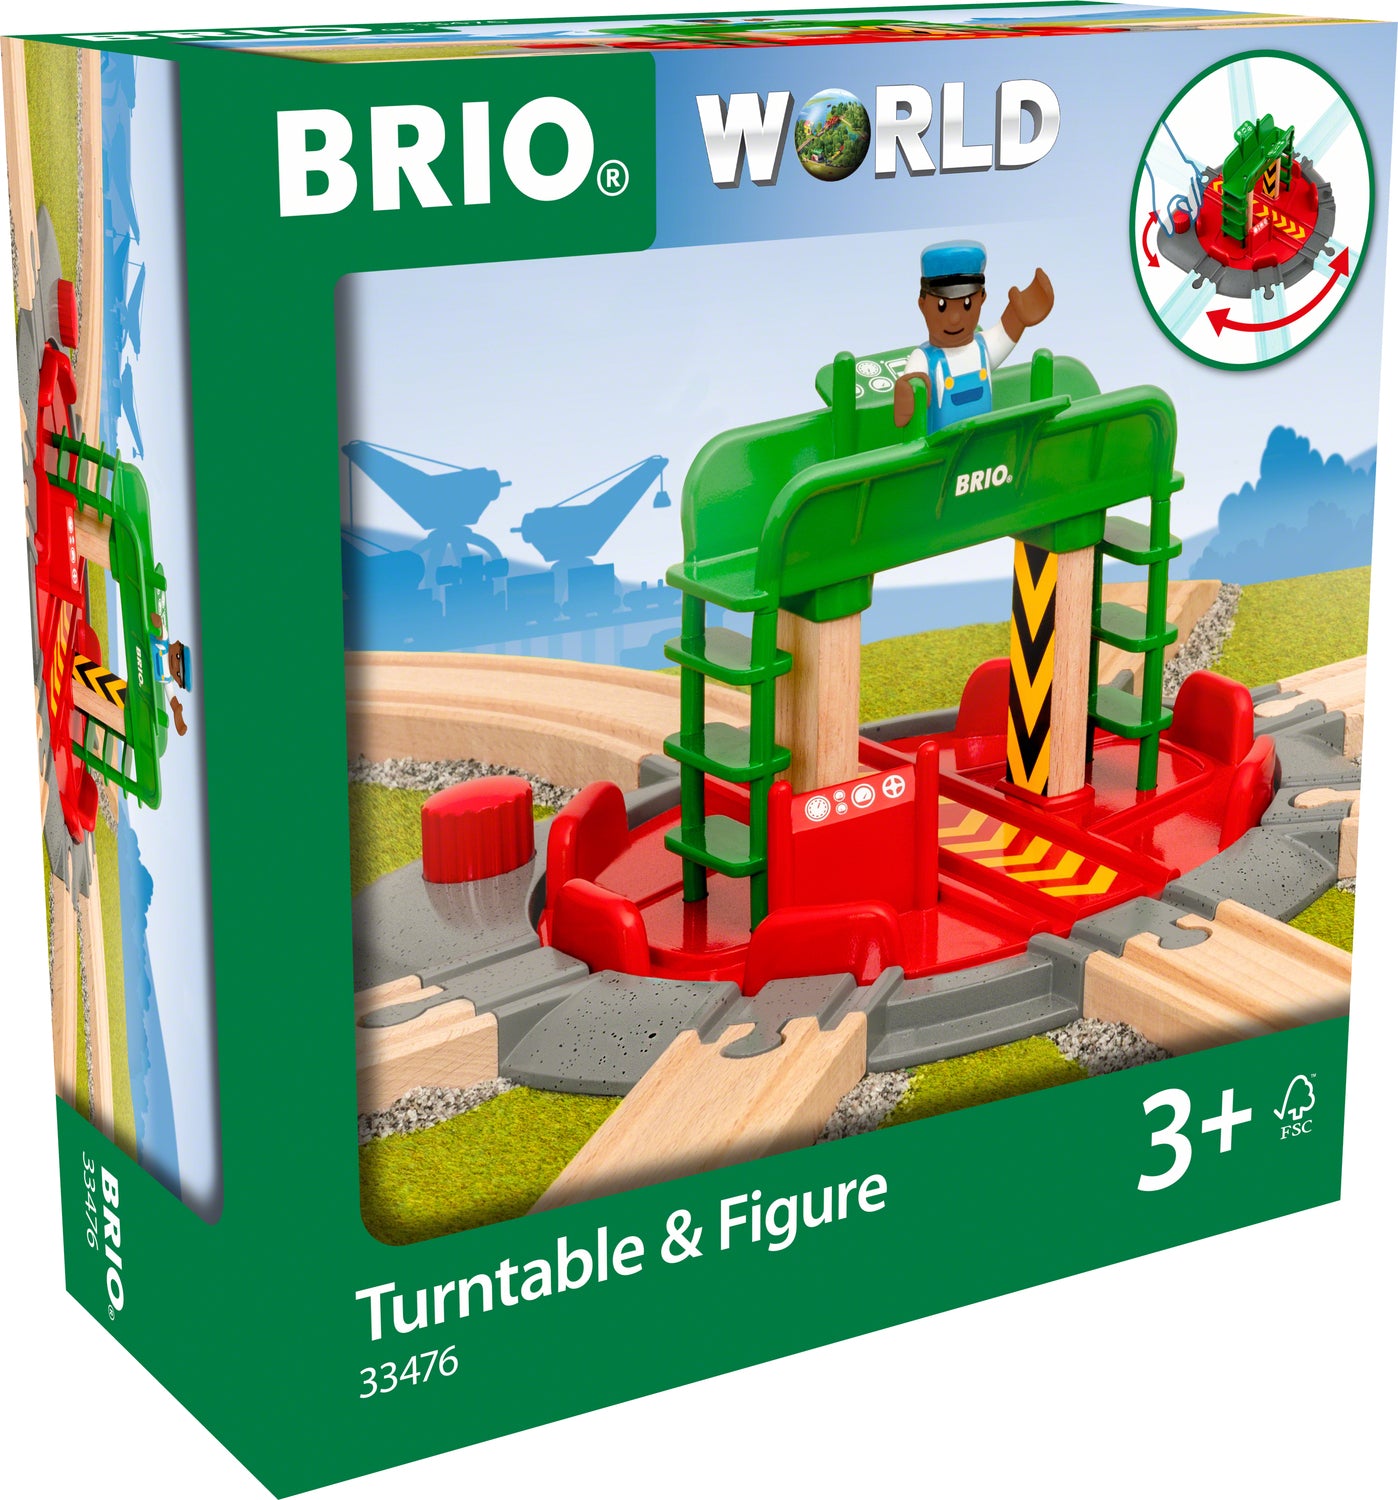 BRIO Turntable & Figure (Accessory)